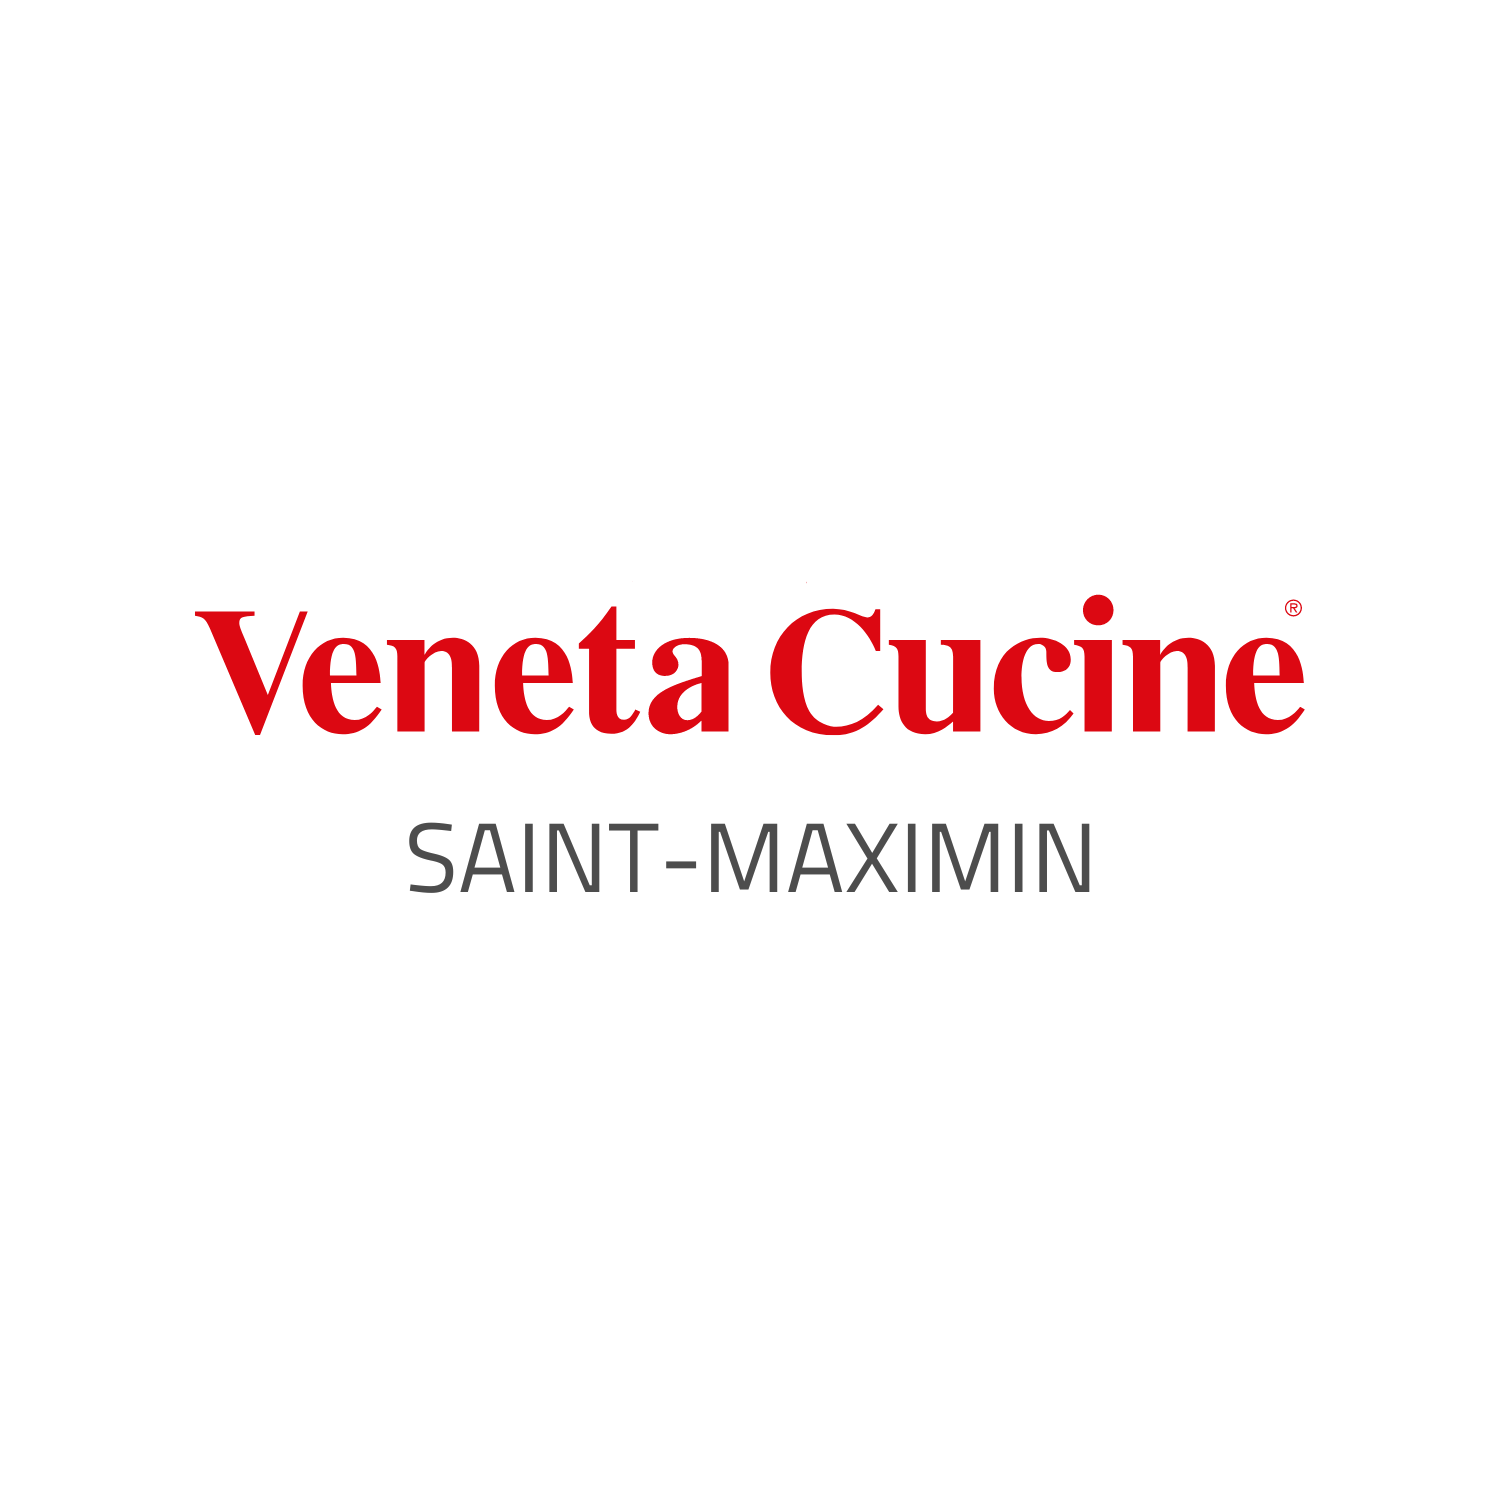 Veneta Cucine Saint-Maximin